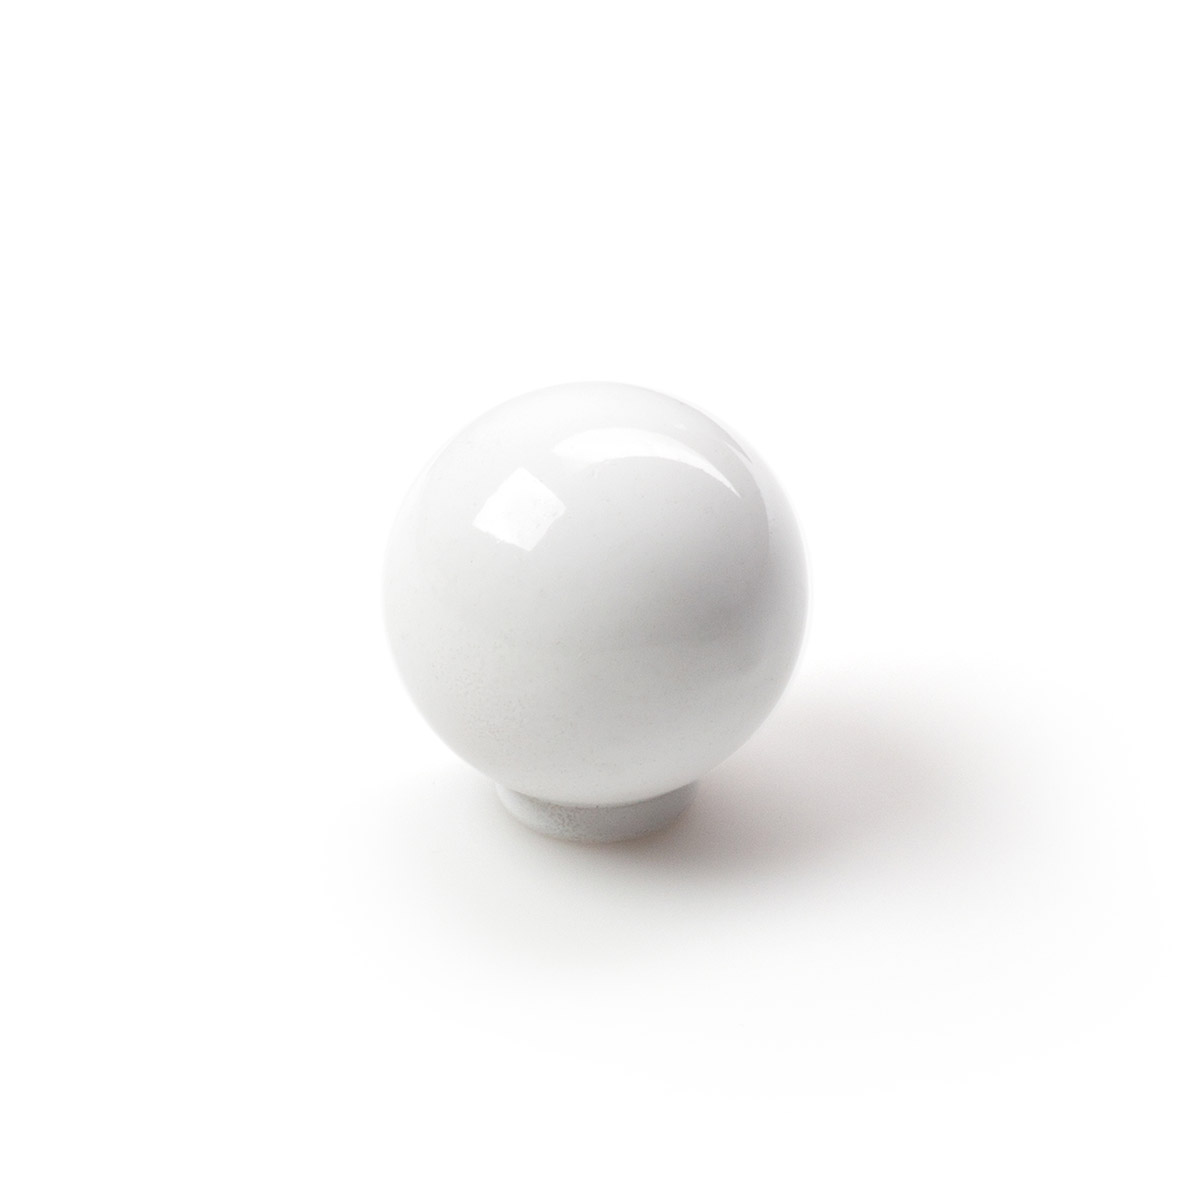 Pomo de plástico con acabado blanco, dimensiones: 25x25x26mm Ø: 25mm